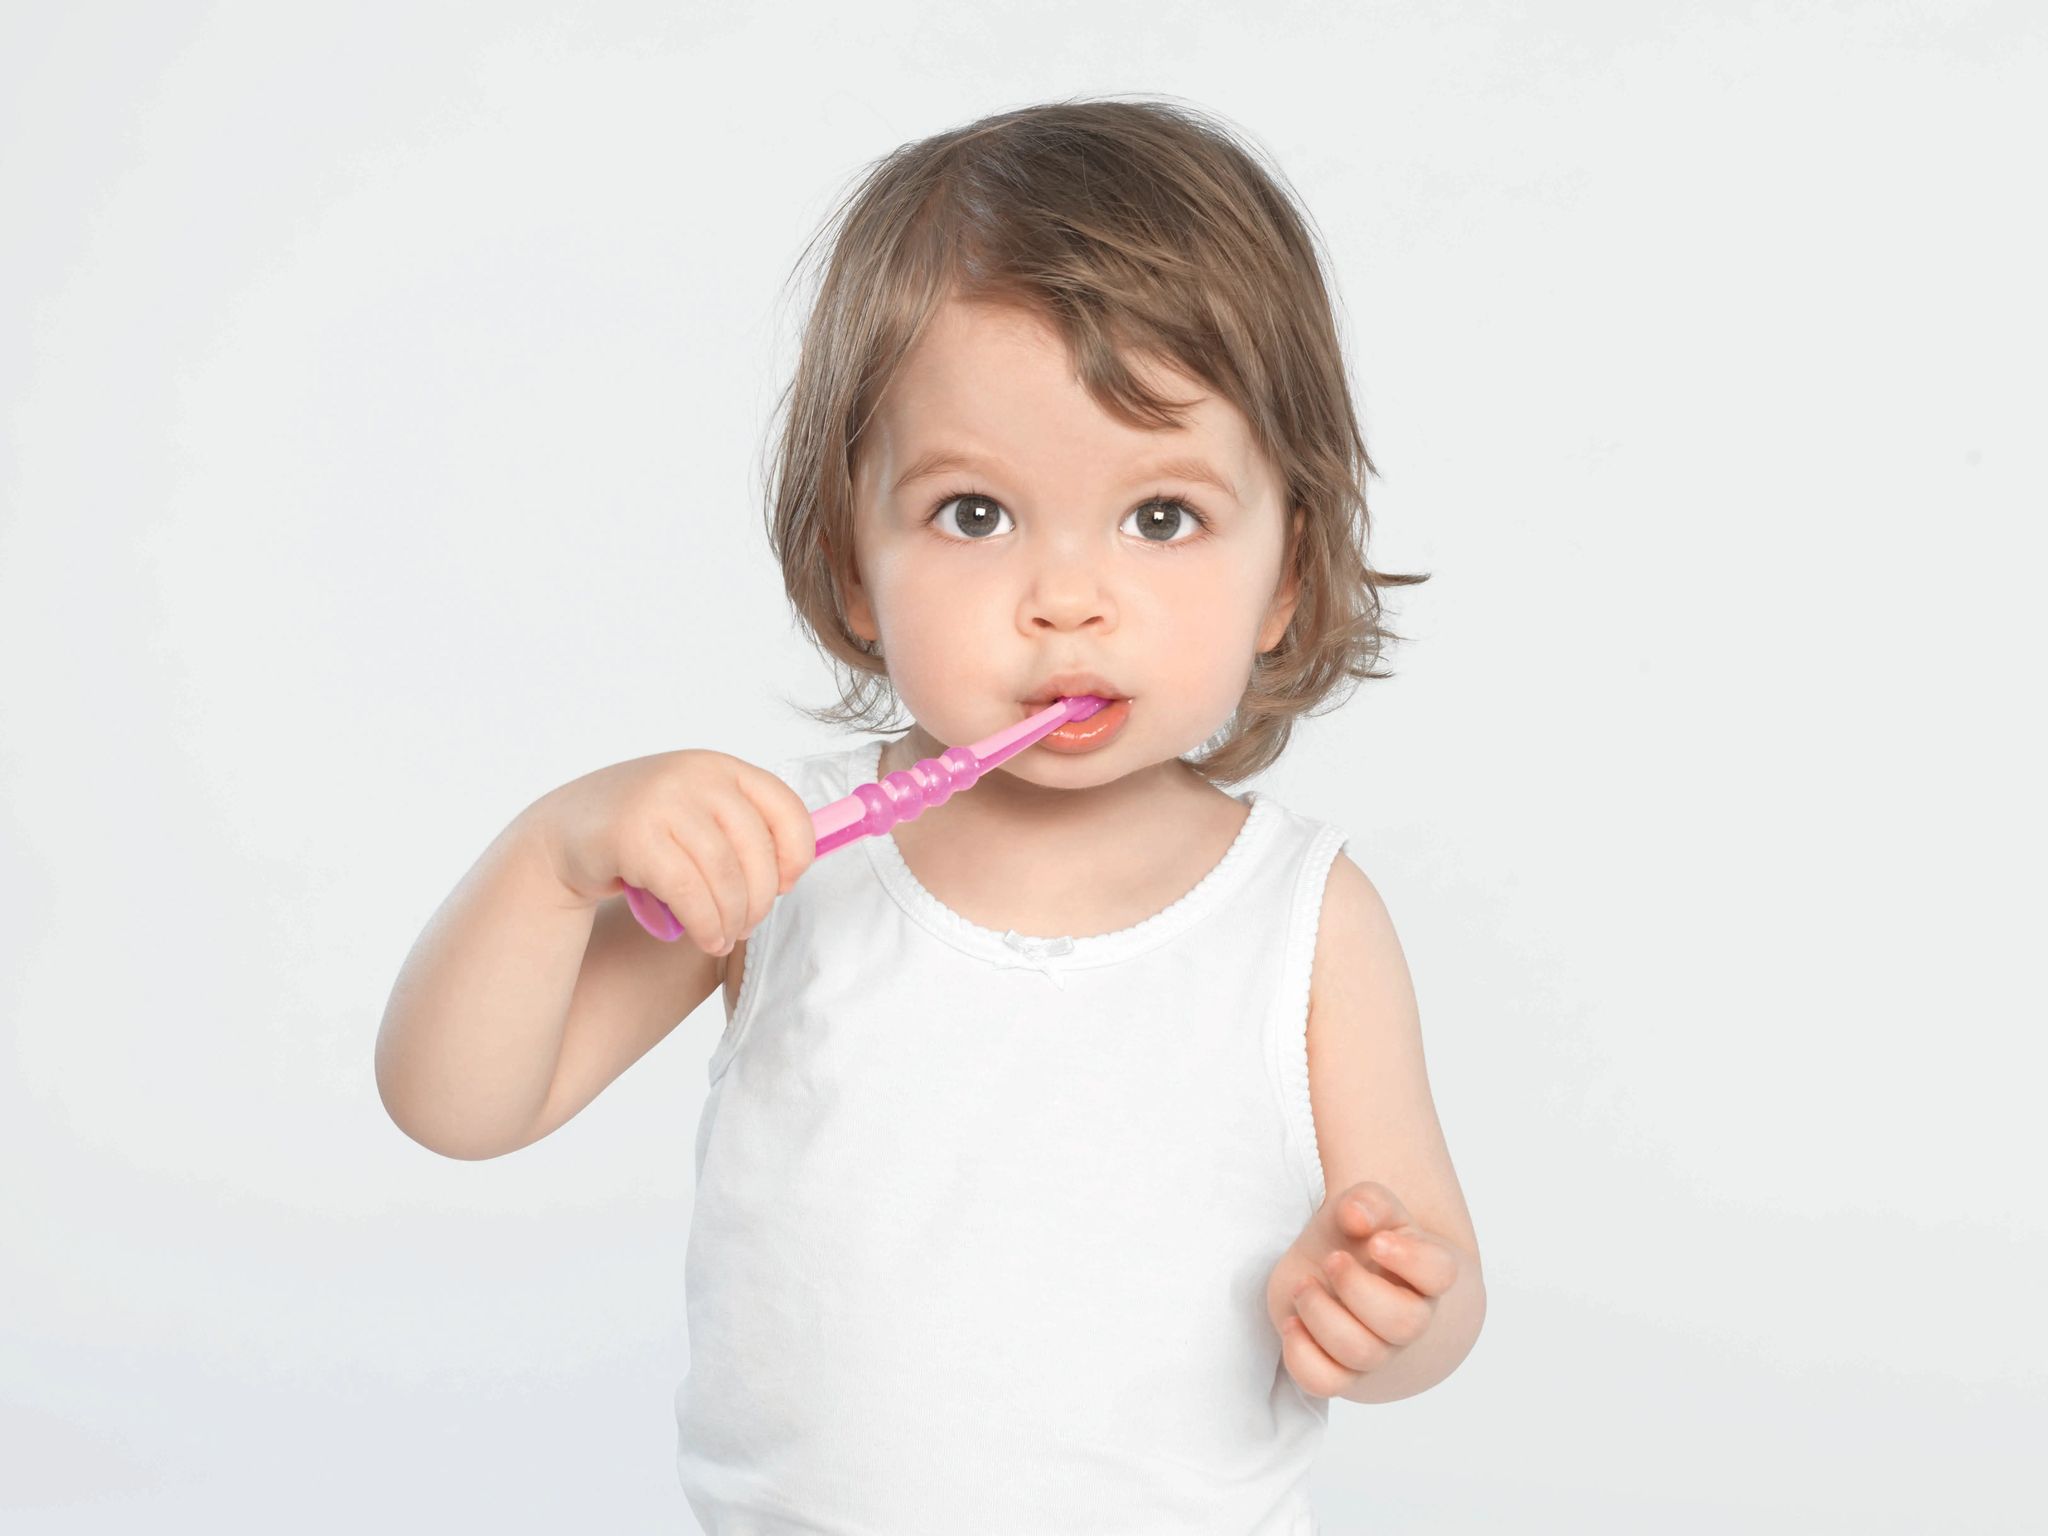 كيورابروكس فرشاة اسنان للاطفال فائقة النعومة